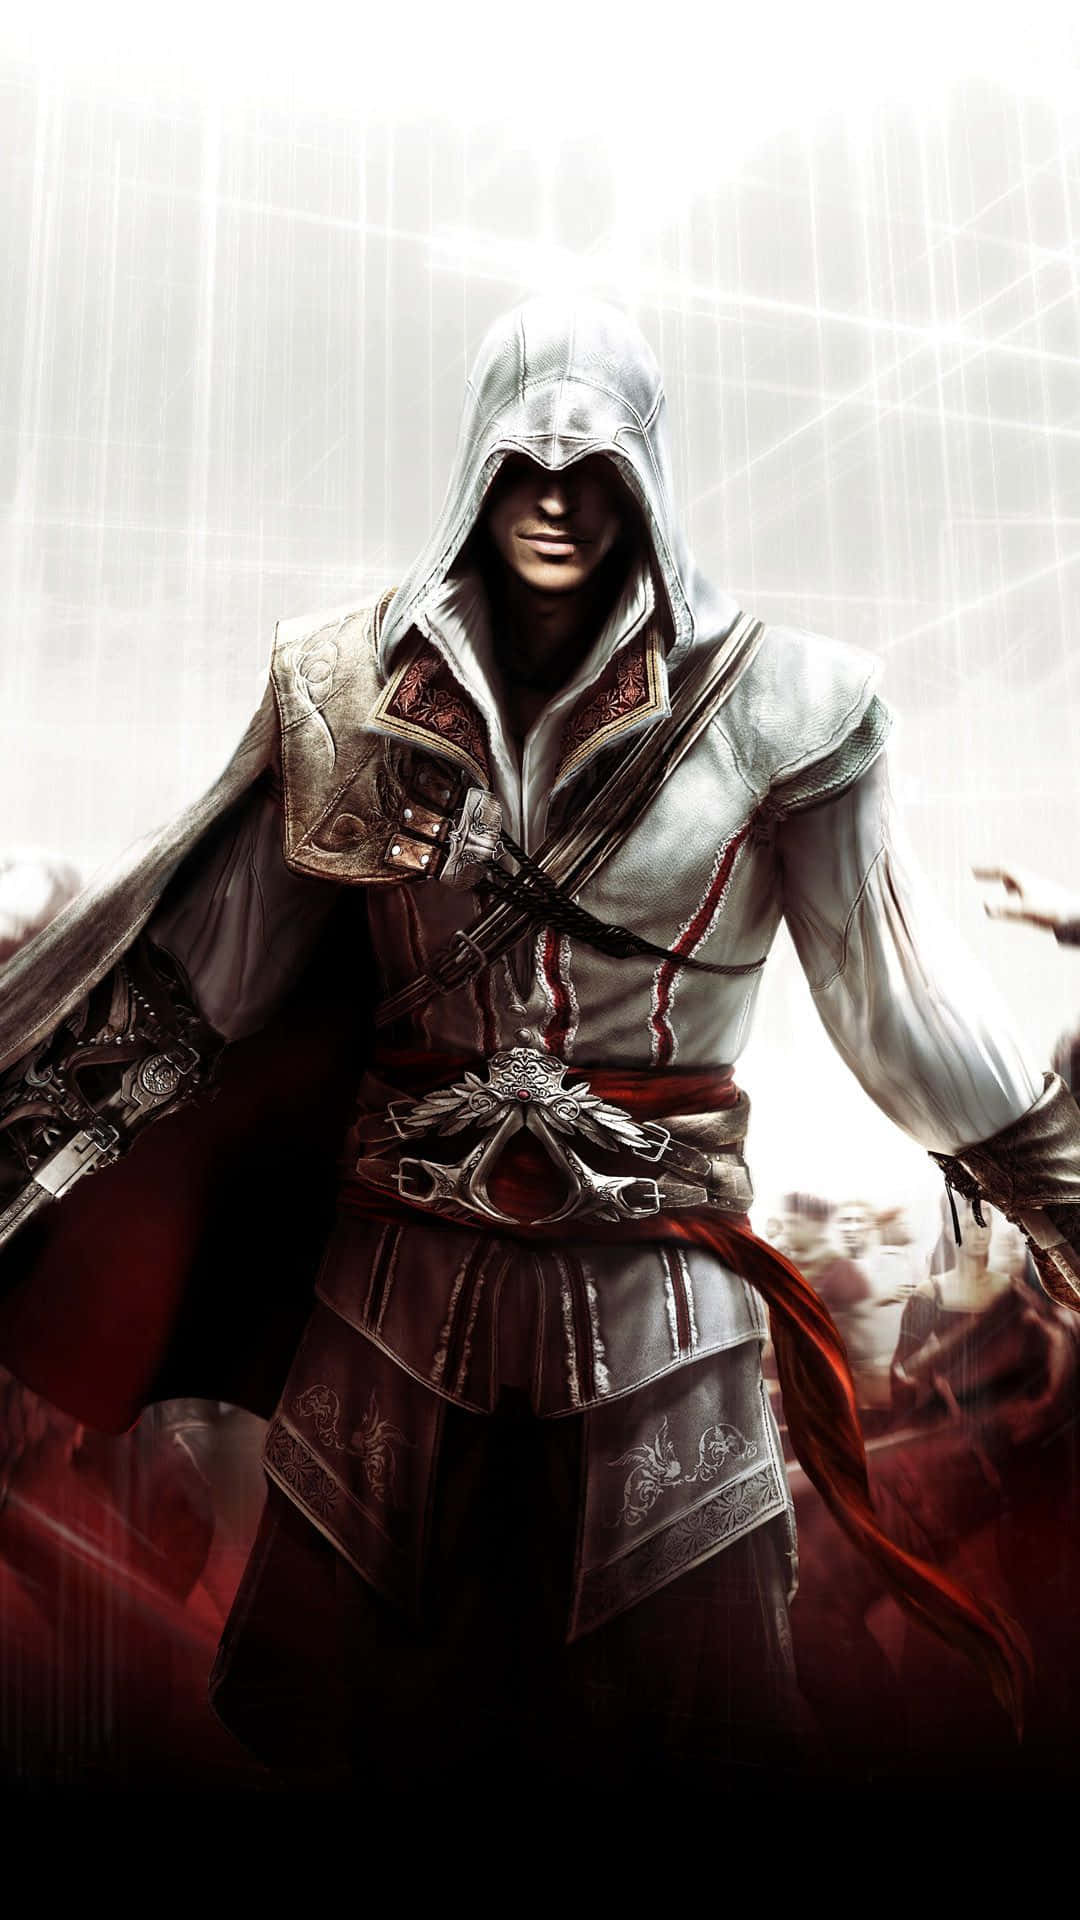 Ezioauditore Da Firenze, El Asesino Italiano En Acción De Assassin's Creed. Fondo de pantalla